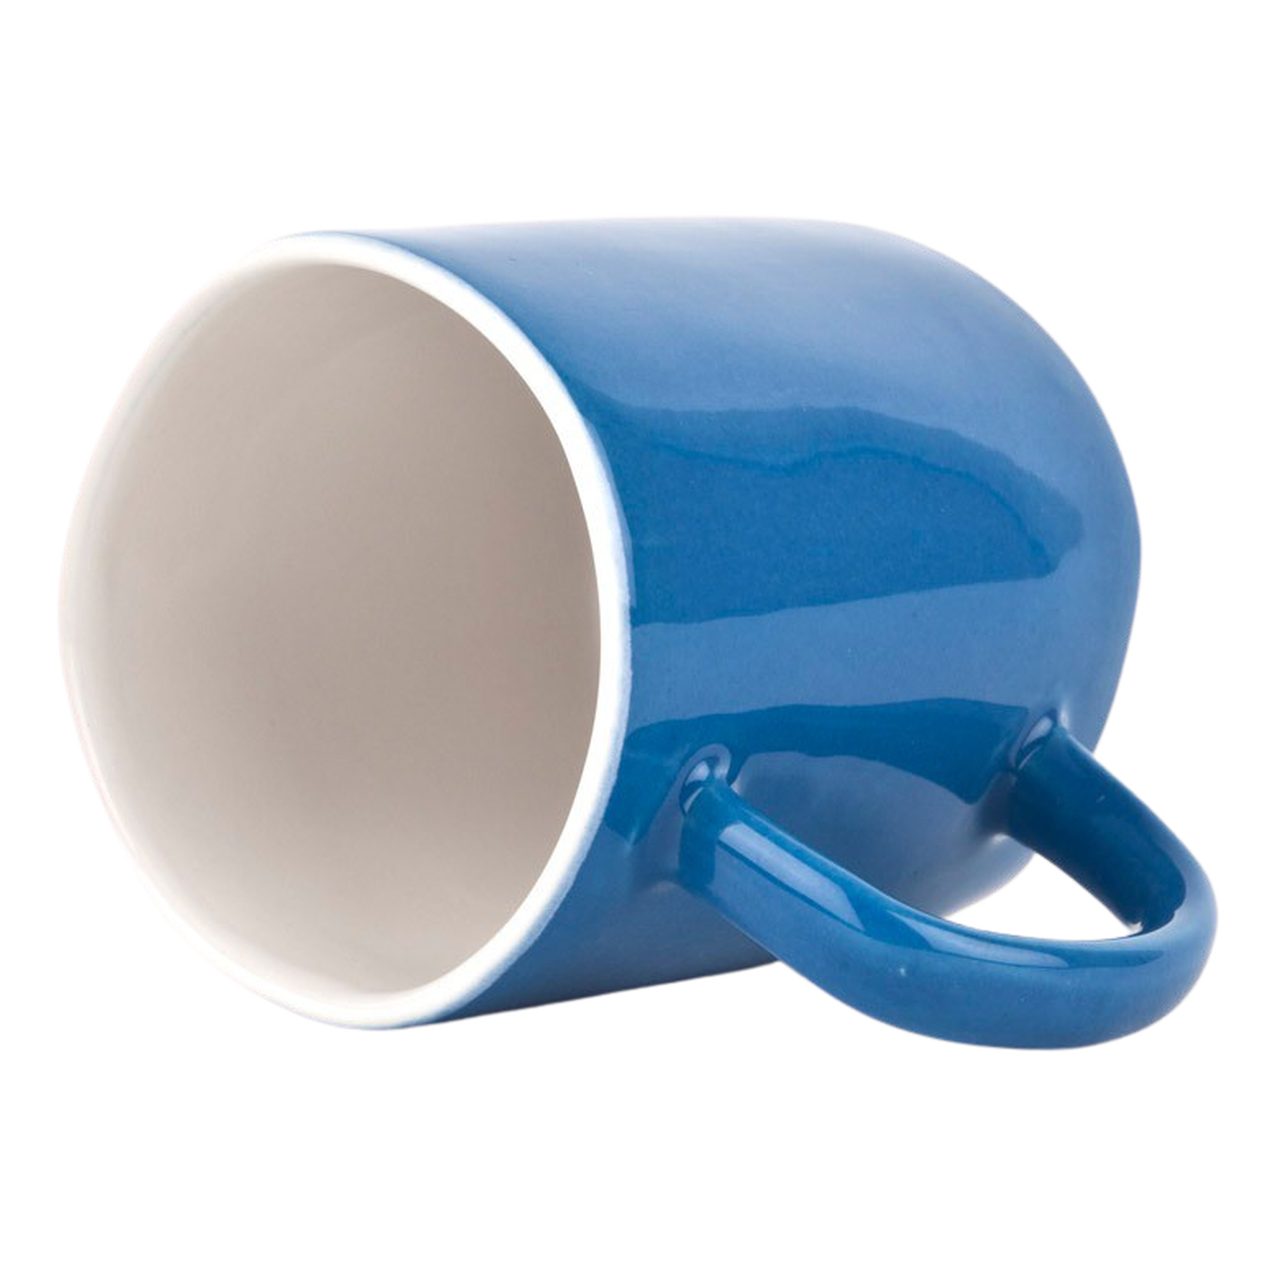 Quail's Egg Set of 2 Deep Blue Ceramic Espresso Cups